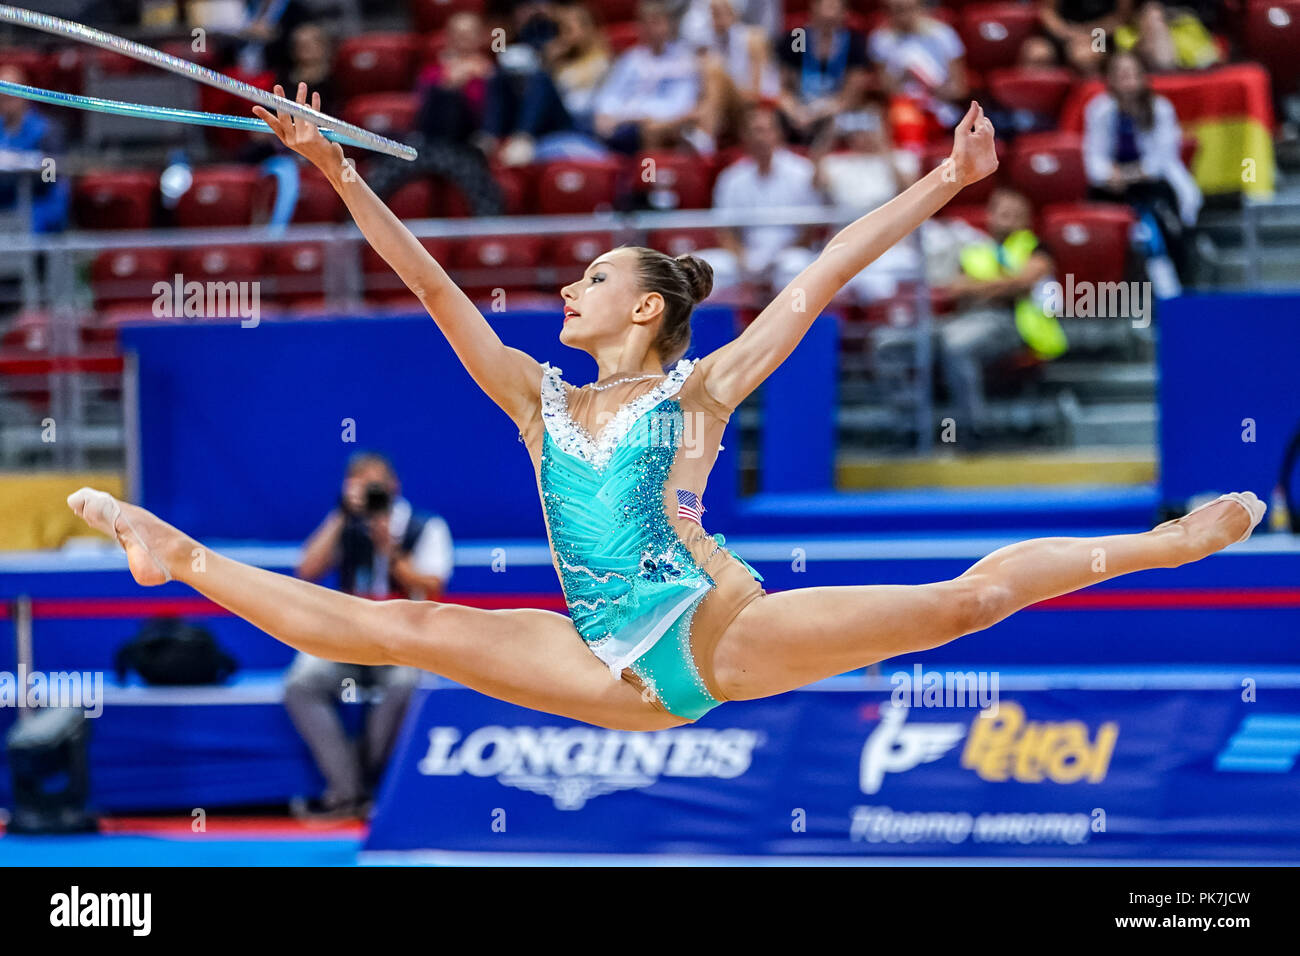 11 septembre 2018 : Evita de Griskenas - United States lors des Championnats du Monde de Gymnastique Rythmique à l'Arena Armeec de Sofia à la 36e FIG Gymnastique Rythmique Championnats du monde. Ulrik Pedersen/CSM Banque D'Images